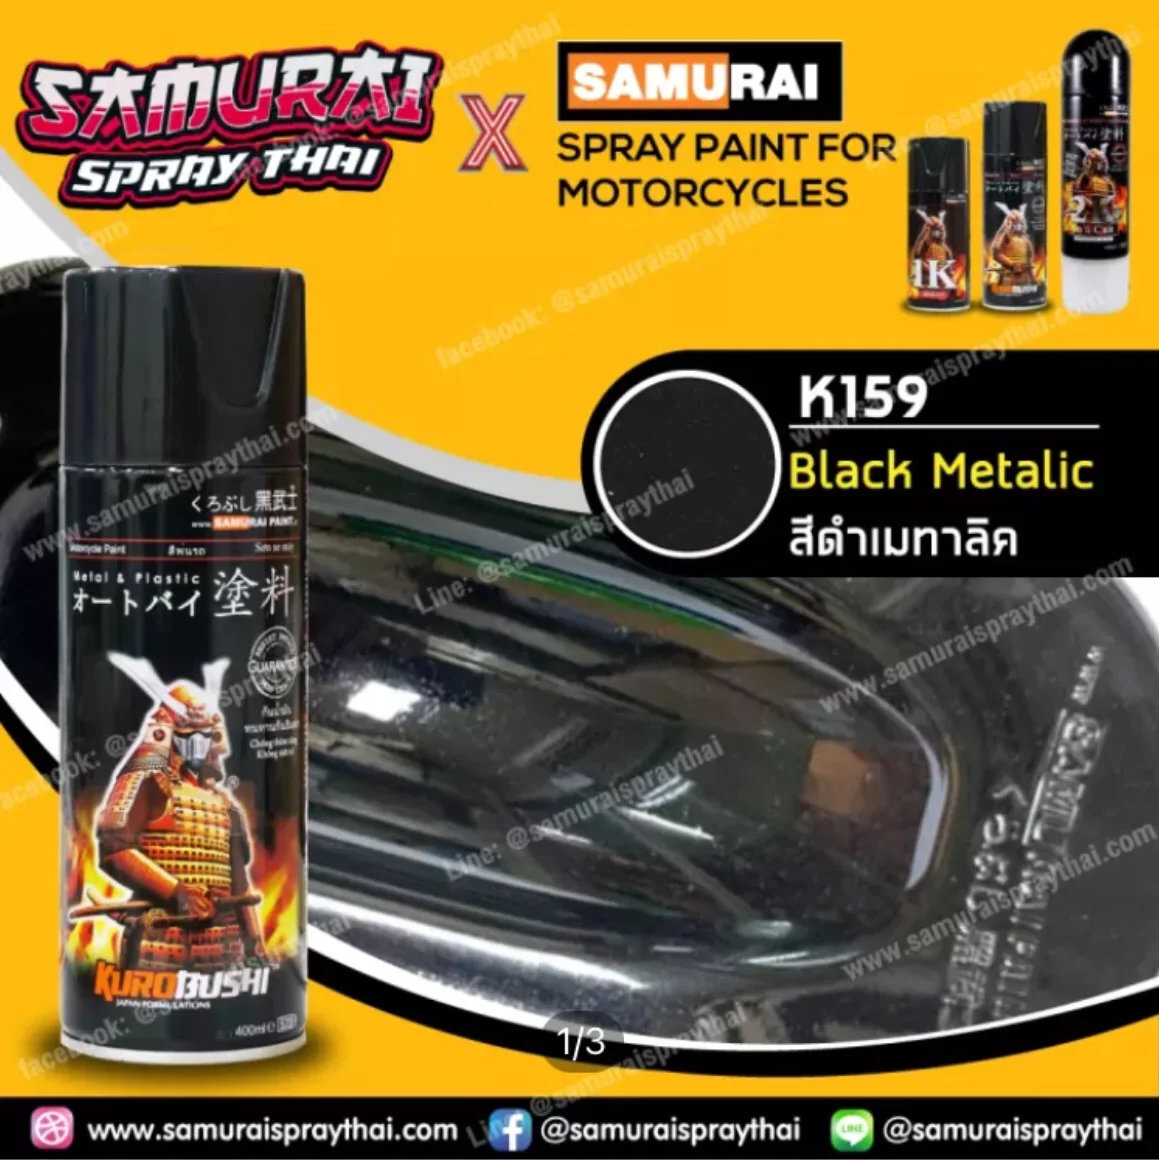 SAMURAI สีสเปรย์ซามูไร สีดำเมทัลลิค เบอร์ K159 * Black Metallic - 400ml